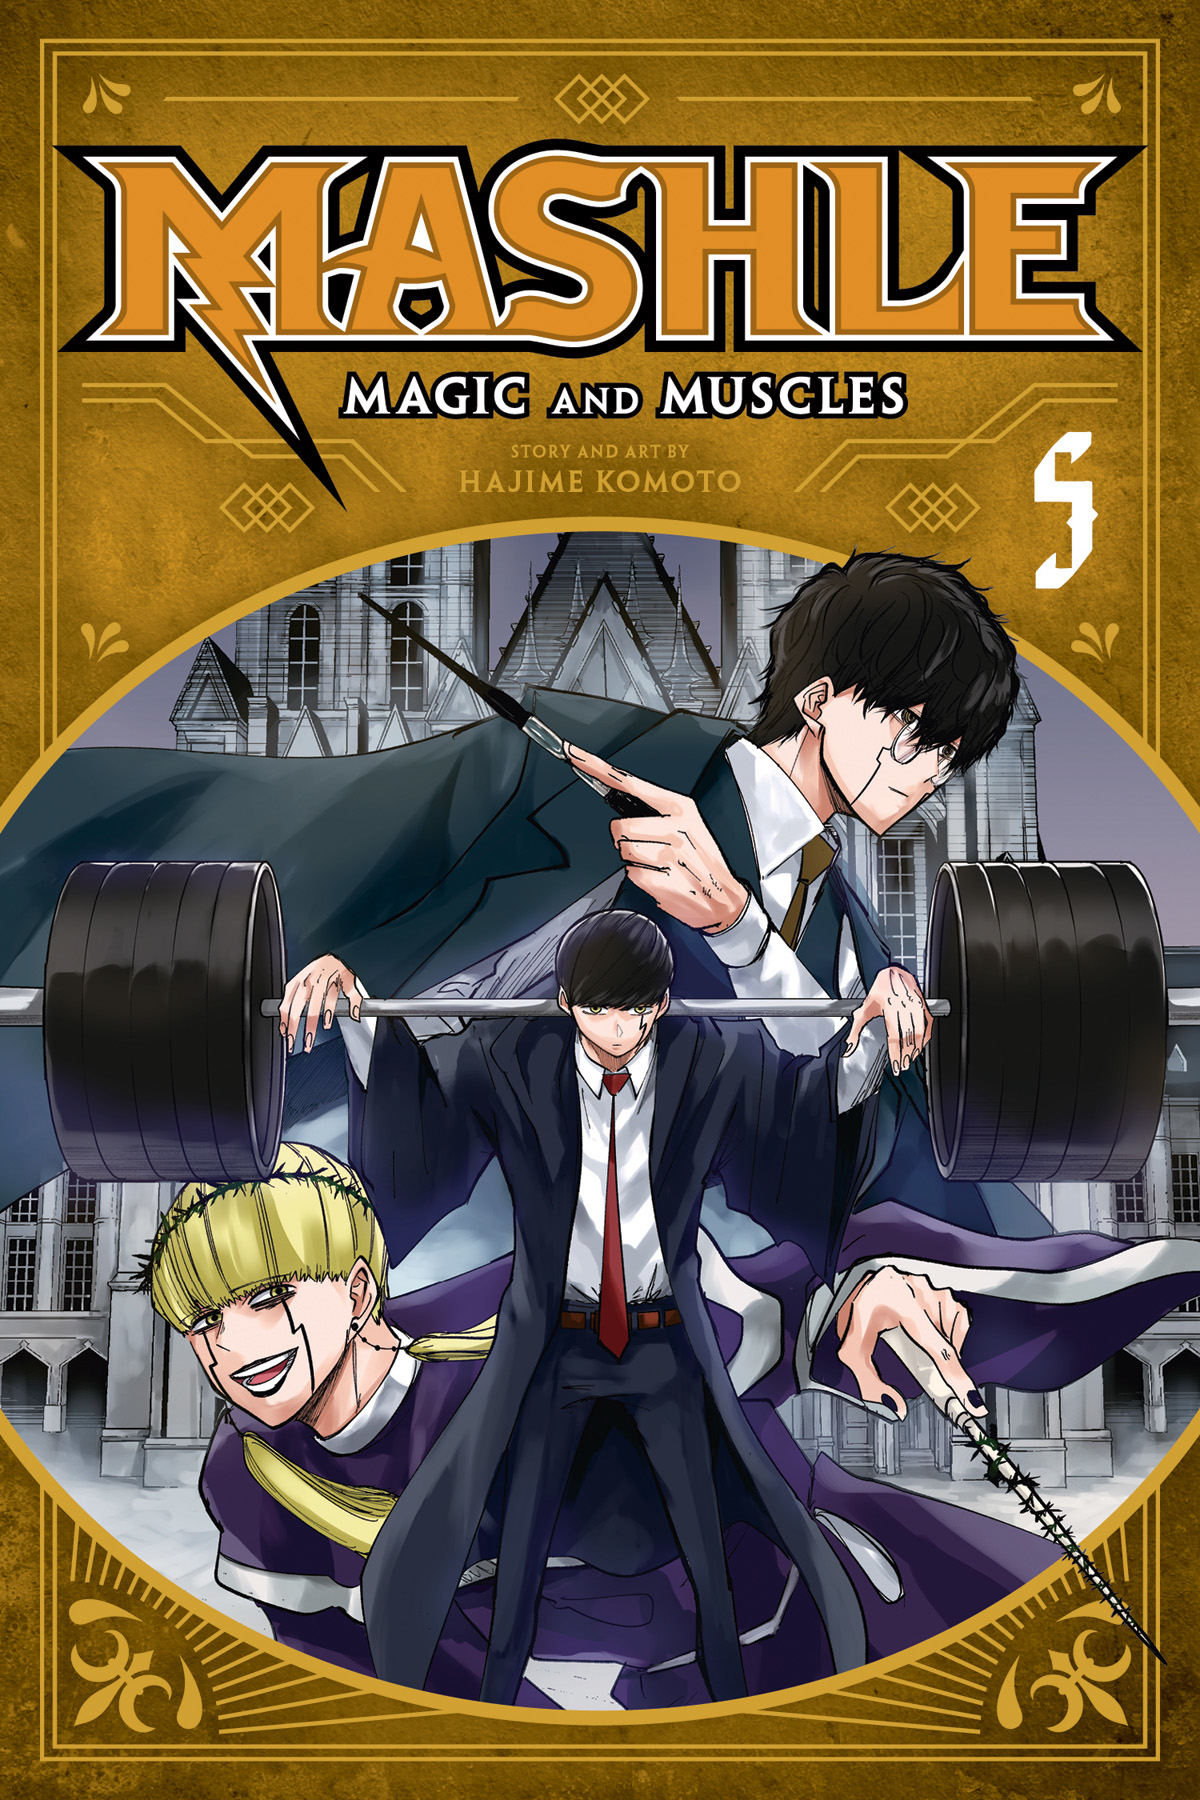 Mashle Magic & Muscles Manga Volume 5